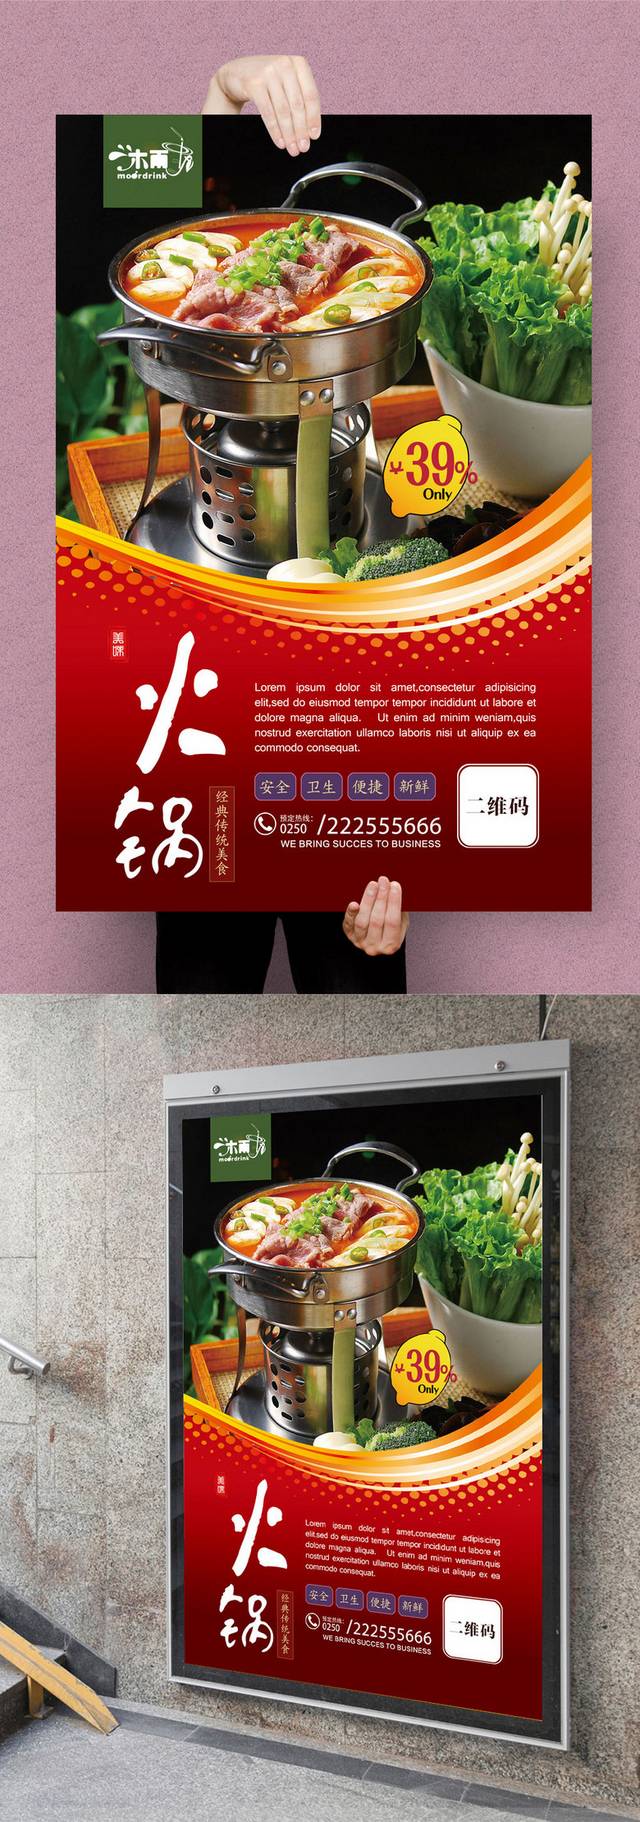 红色高档韩式年糕火锅海报设计